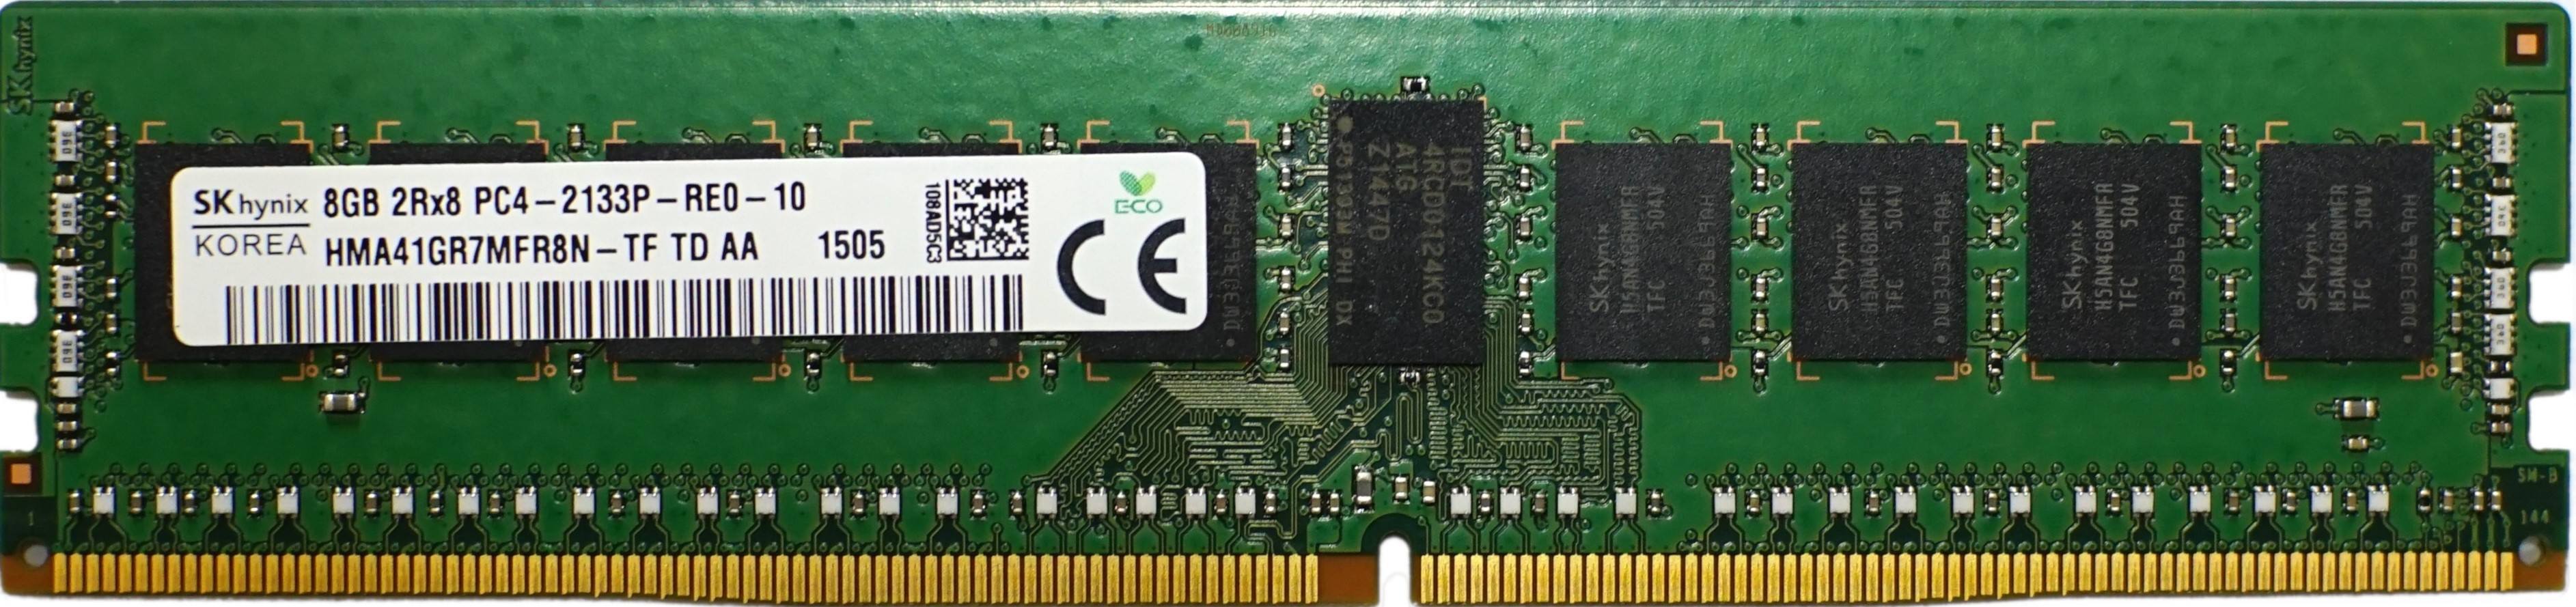 Hynix - 8GB PC4-17000P-R (DDR4-2133MHz, 2RX8)